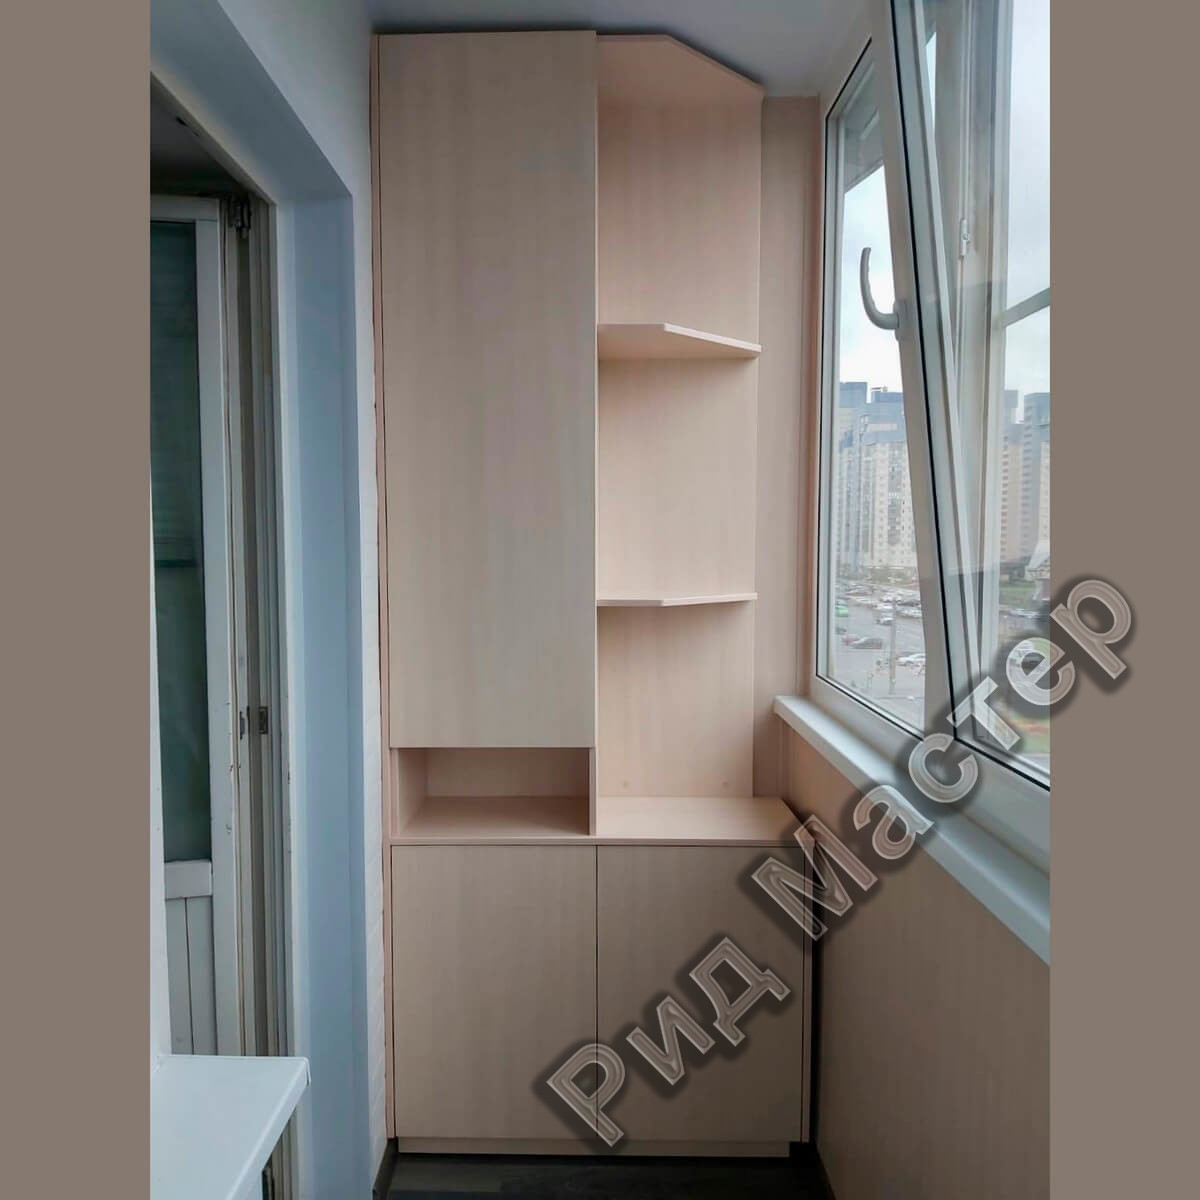 Современные шкафы на балконе — купить мебель по цене производителя